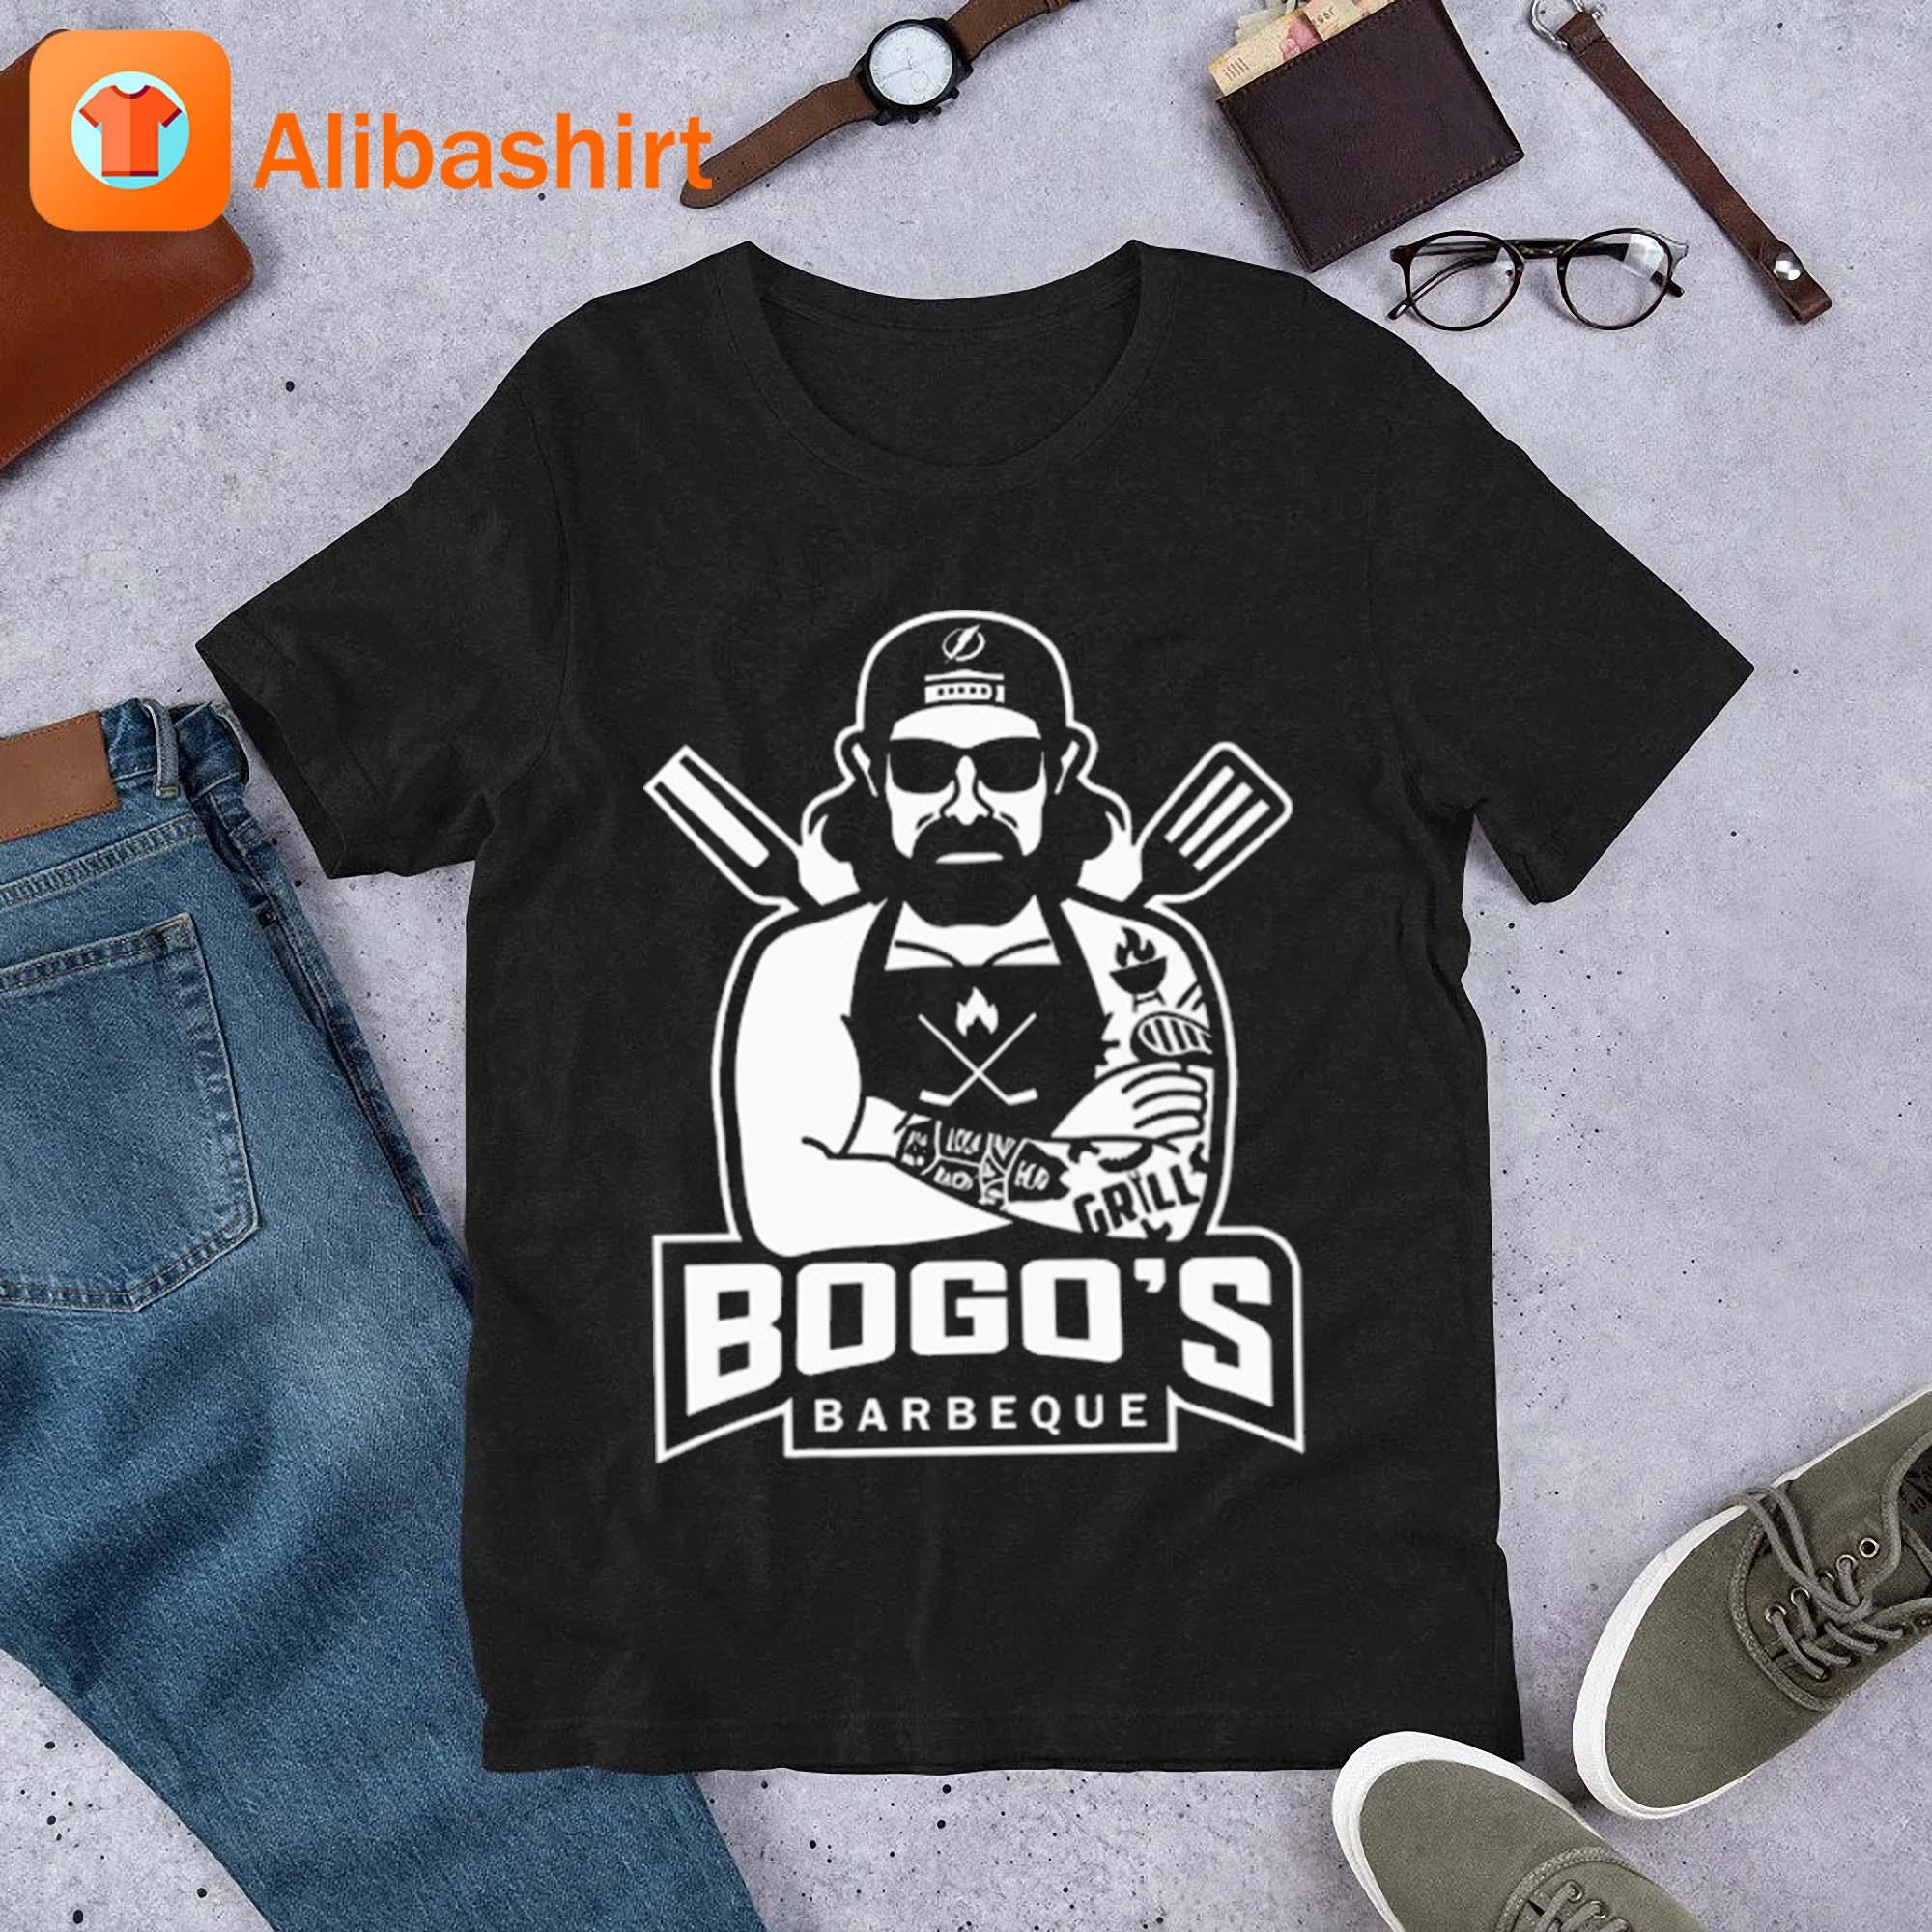 Tampa Bay Lightning BOGO'S BBQ Shirt